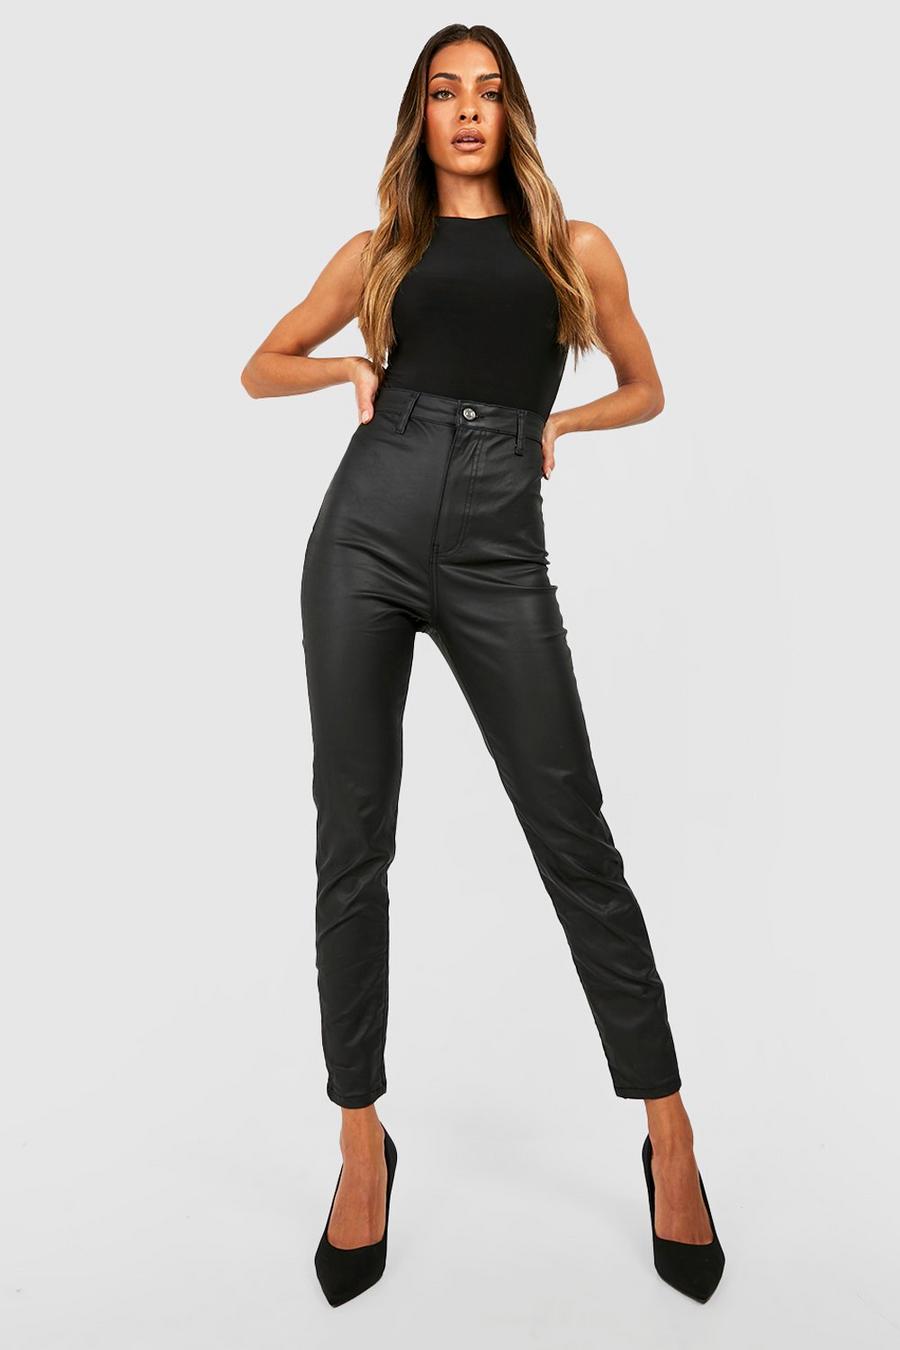 שחור מכנסי ג'ינס סקיני בגזרה גבוהה בסגנון דיסקו עם ציפוי